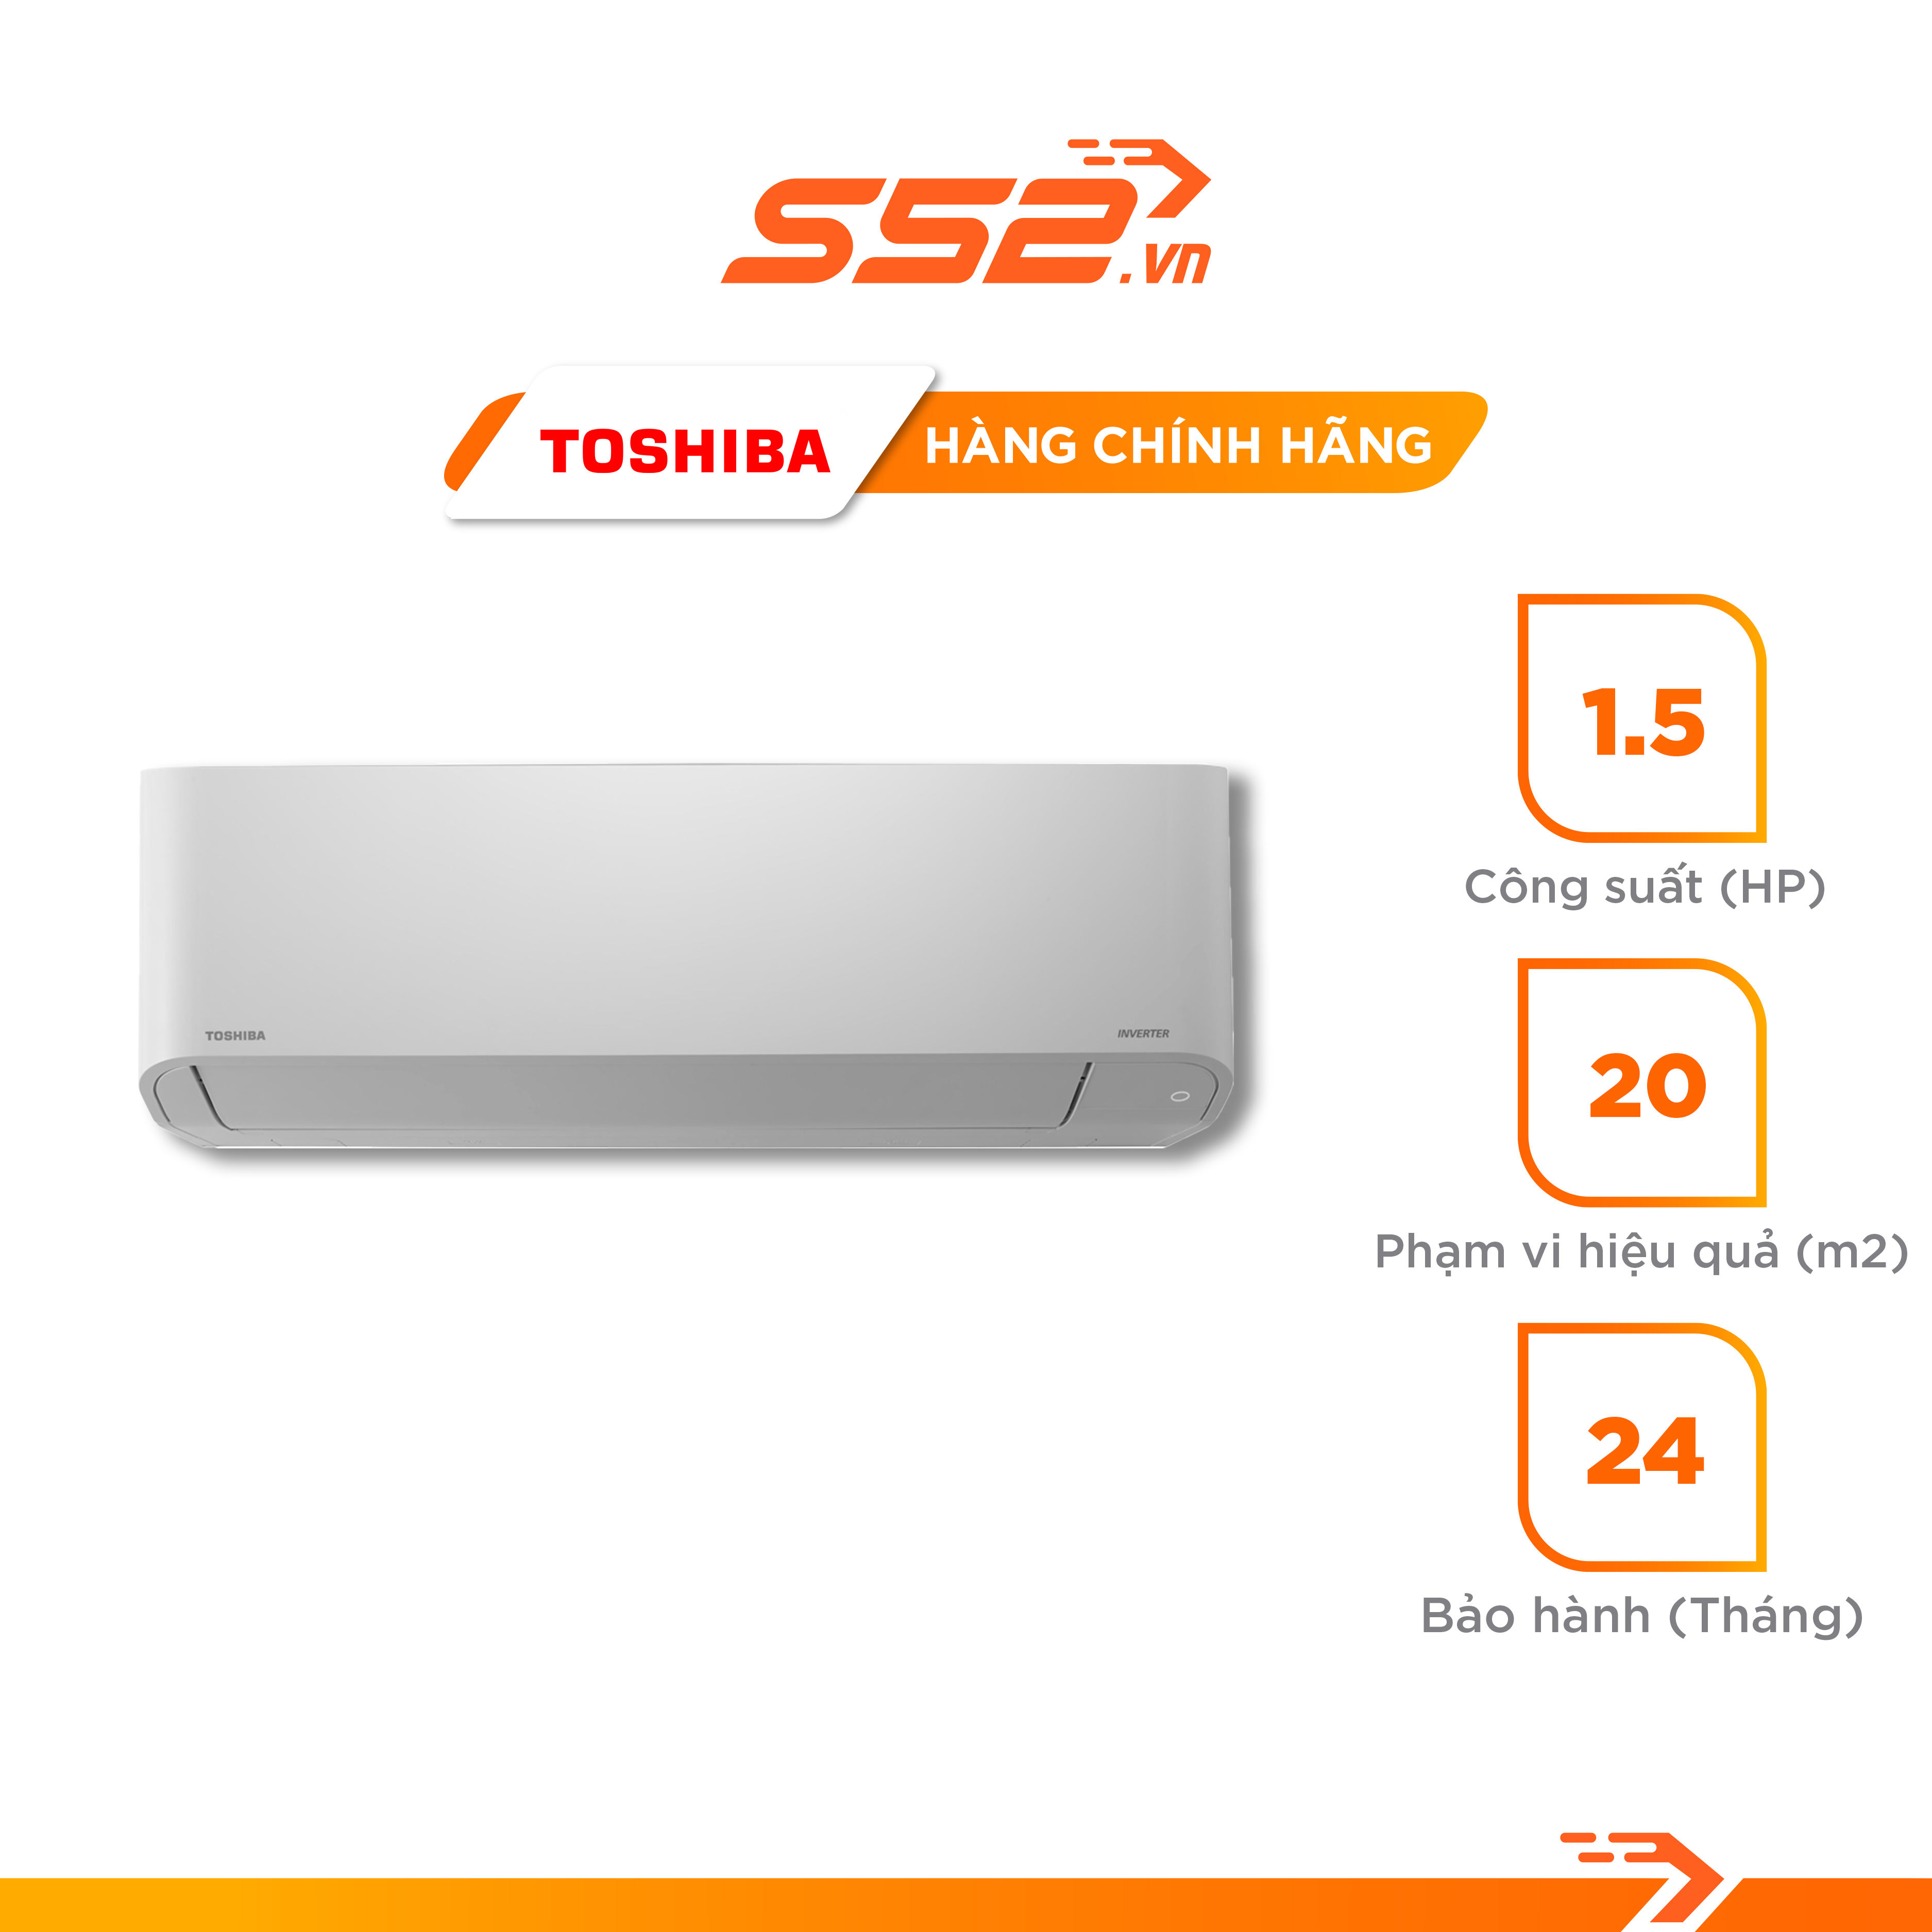 Máy lạnh Toshiba Inverter 1.5 HP RAS-H13H2KCVG-V - Hàng Chính Hãng - Giao toàn quốc